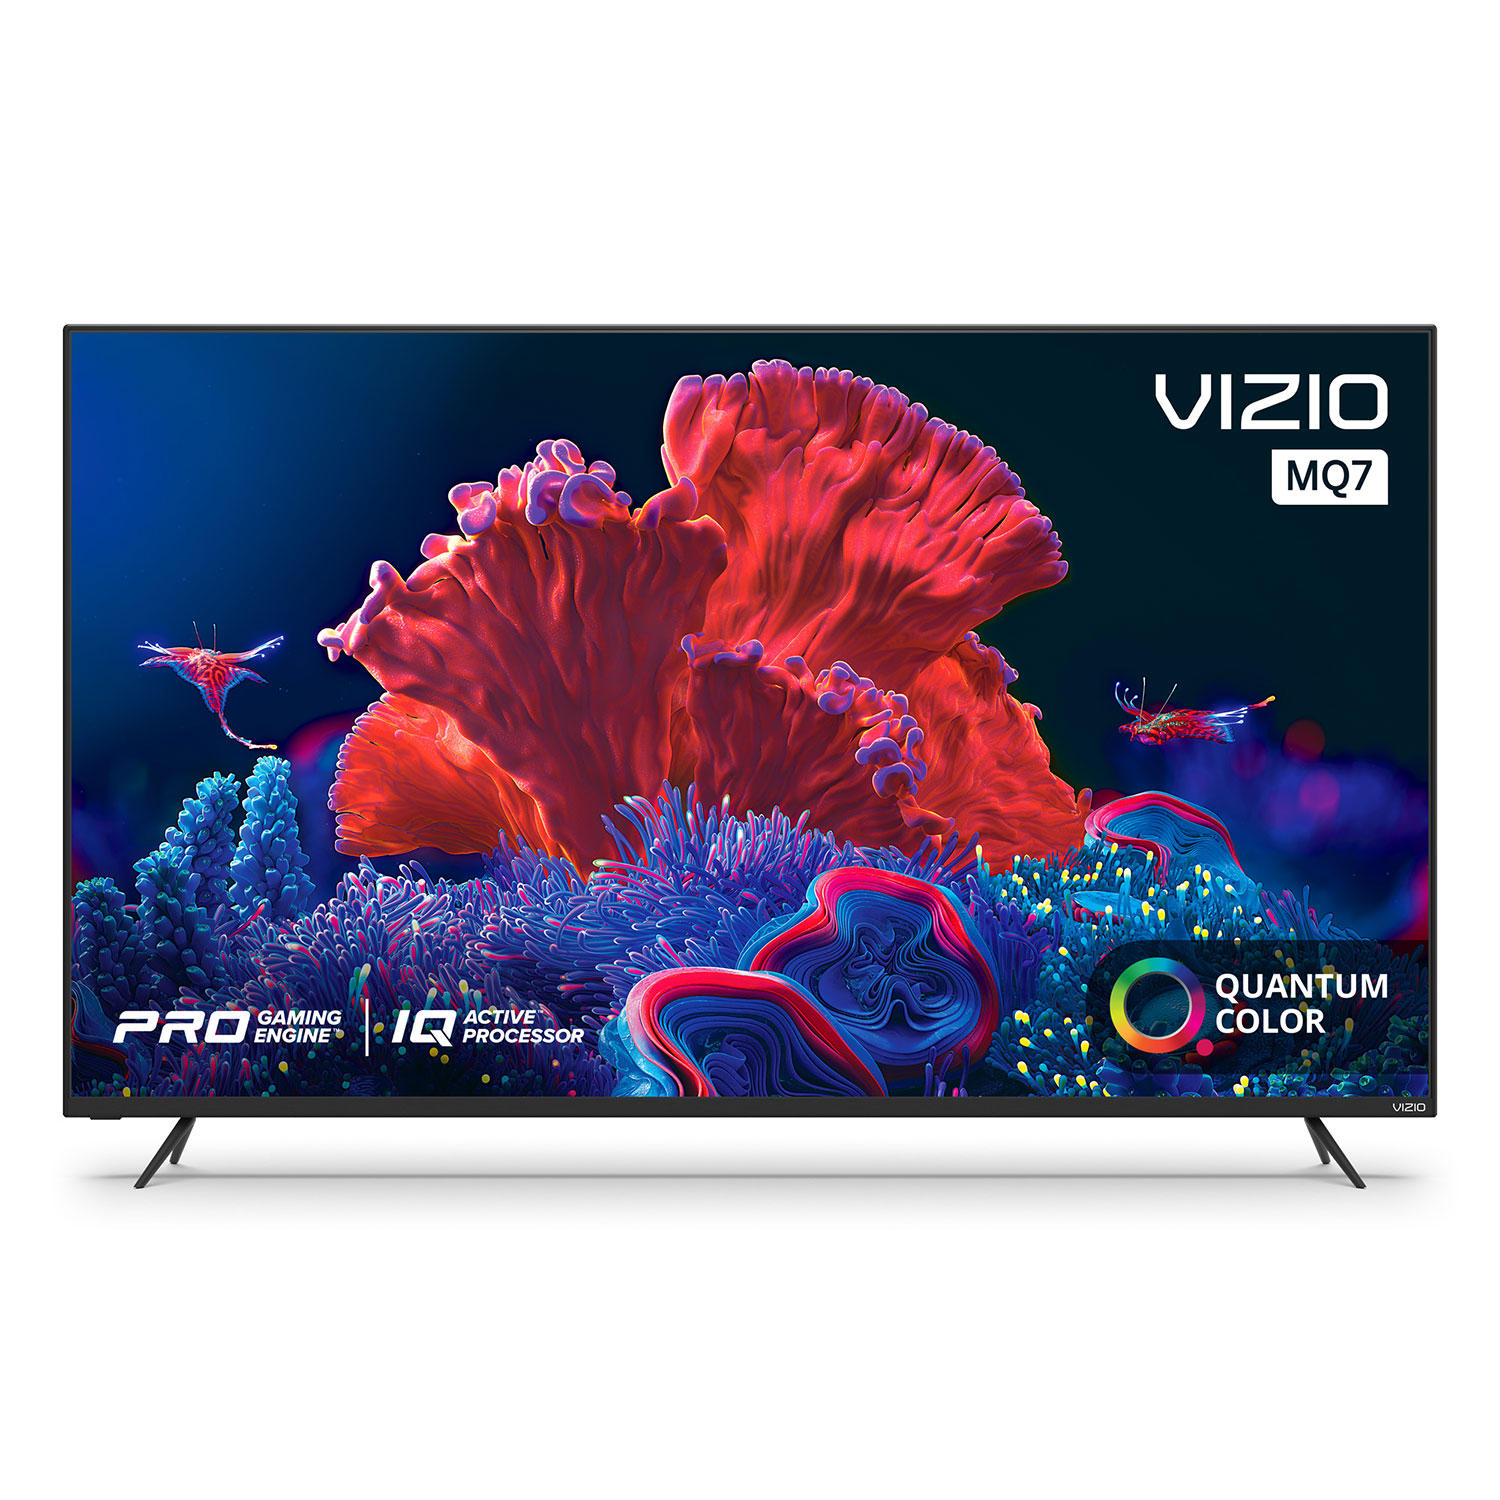 VIZIO 55" Class M-Series Quantum 4K HDR Smart TV - M55Q7-H1 $428.99